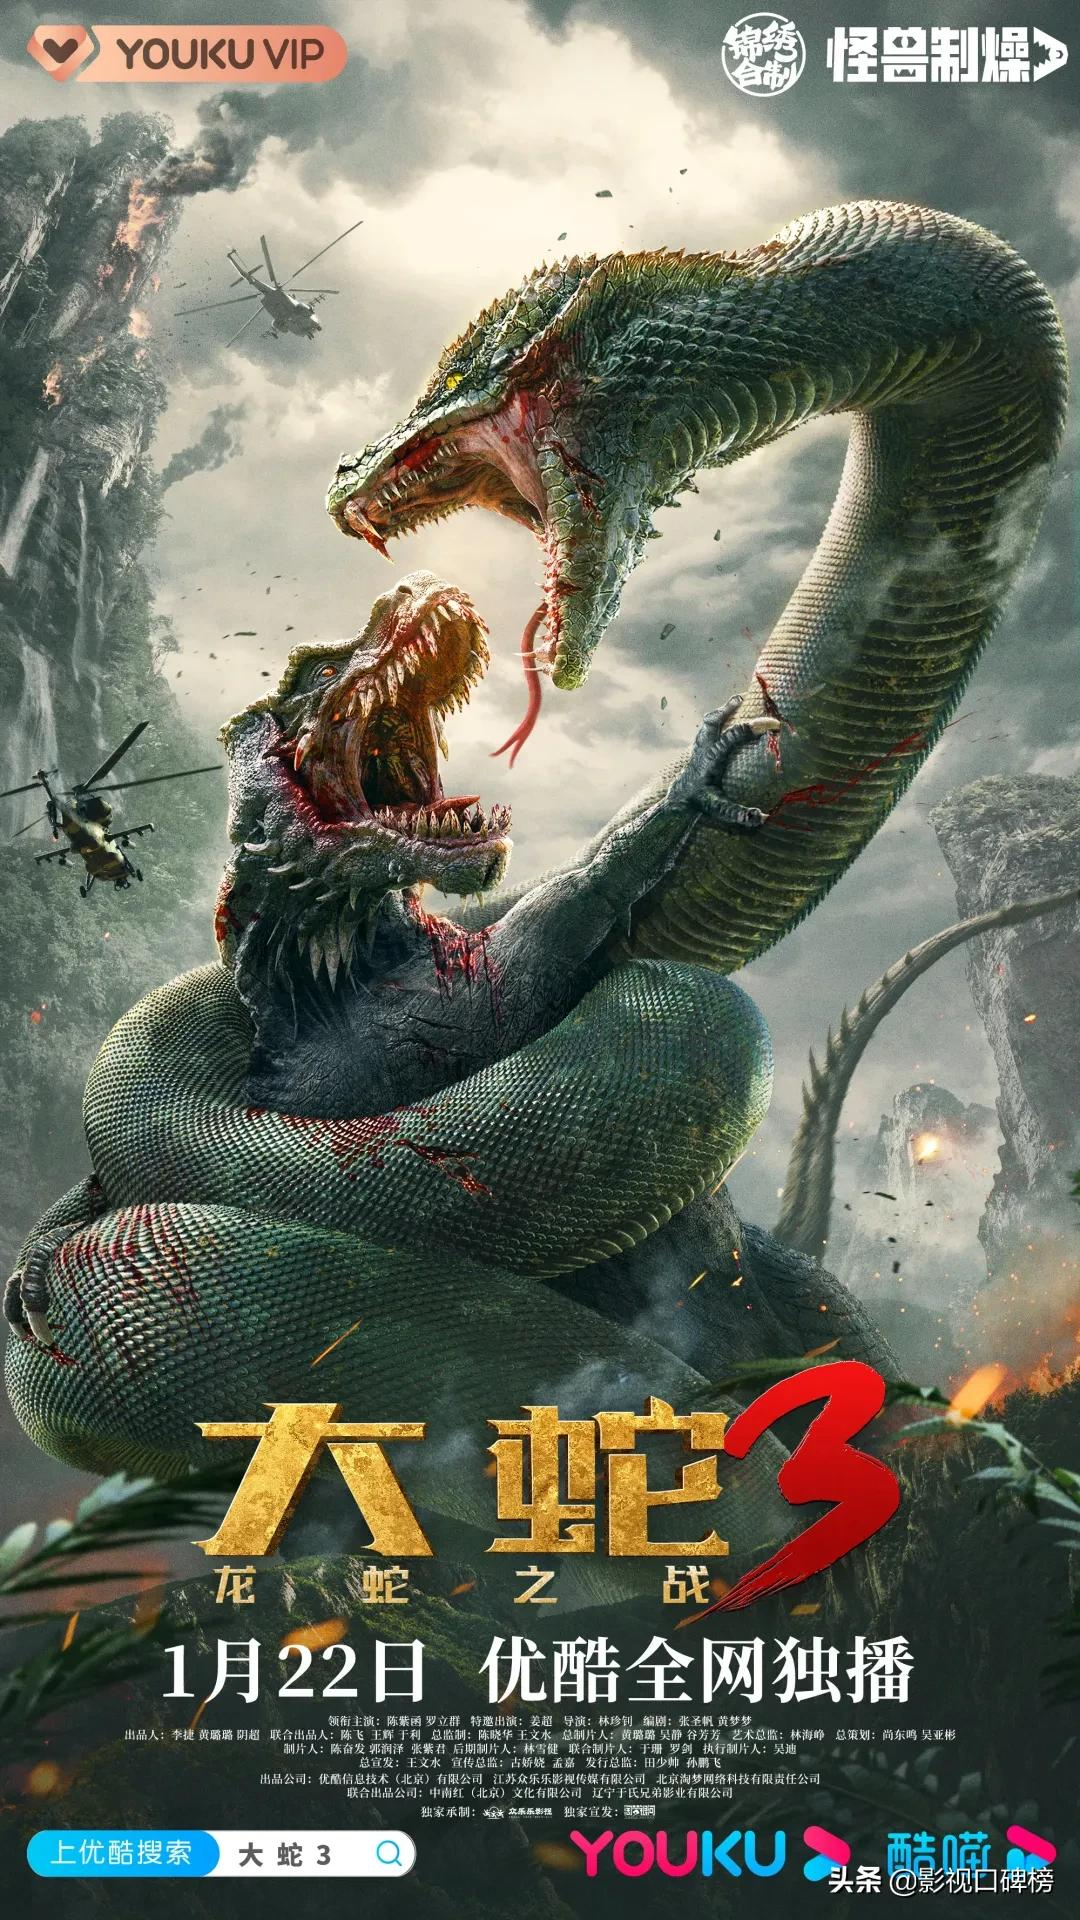 女神陈紫函梦幻联动，《大蛇3：龙蛇之战》开启怪兽电影新纪元